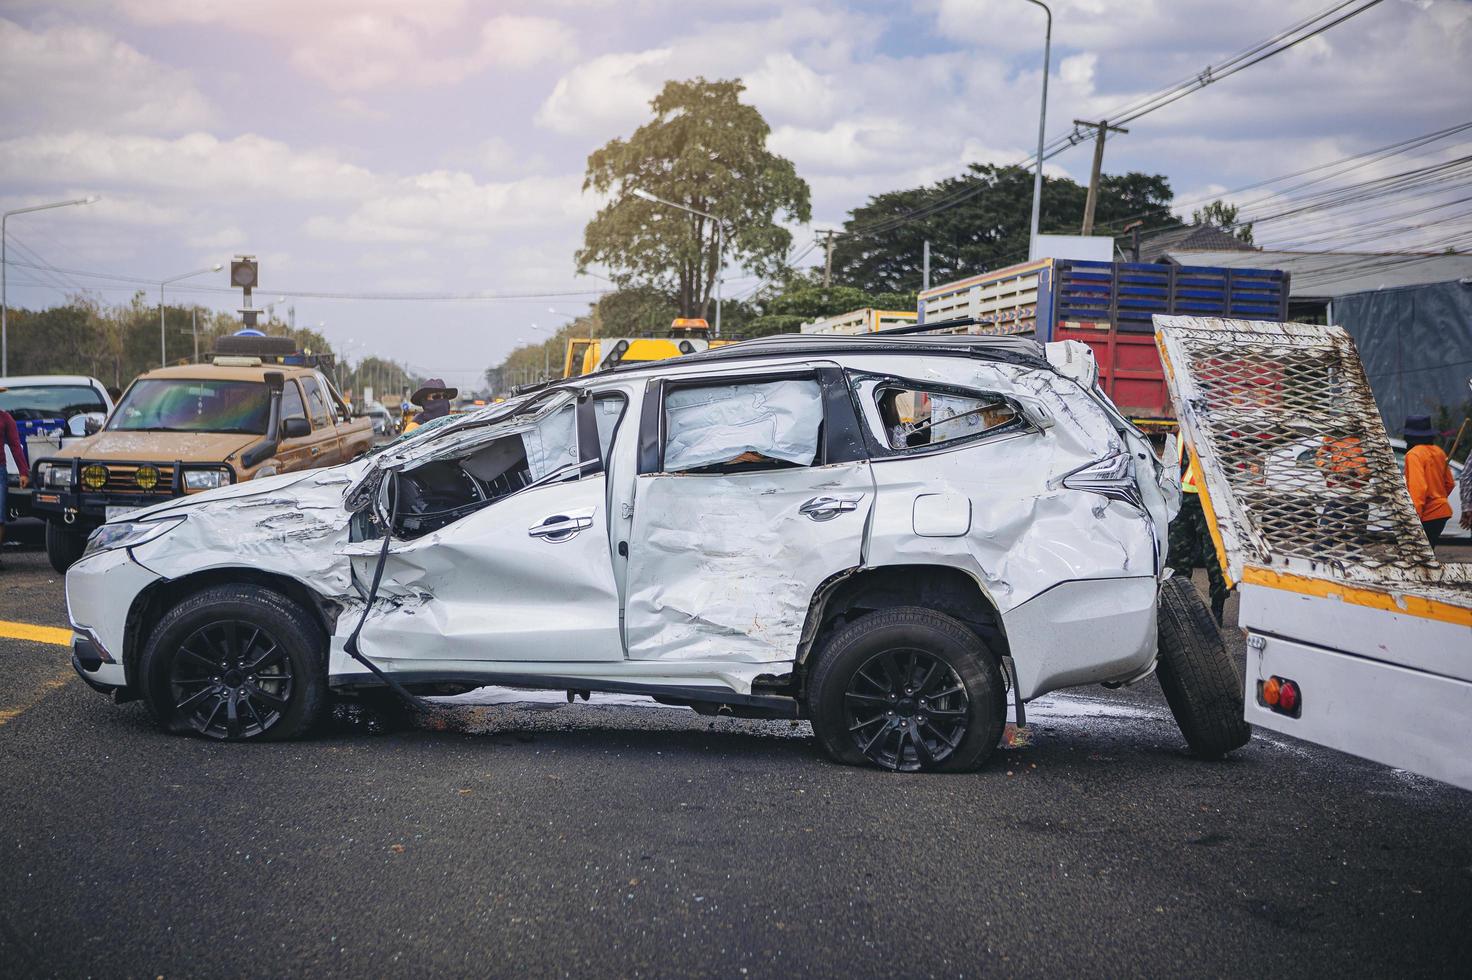 Autounfall gefährlicher Unfall auf der Straße. suv-auto, das von einem anderen auf der straße beschädigt wird und auf rettung wartet. foto